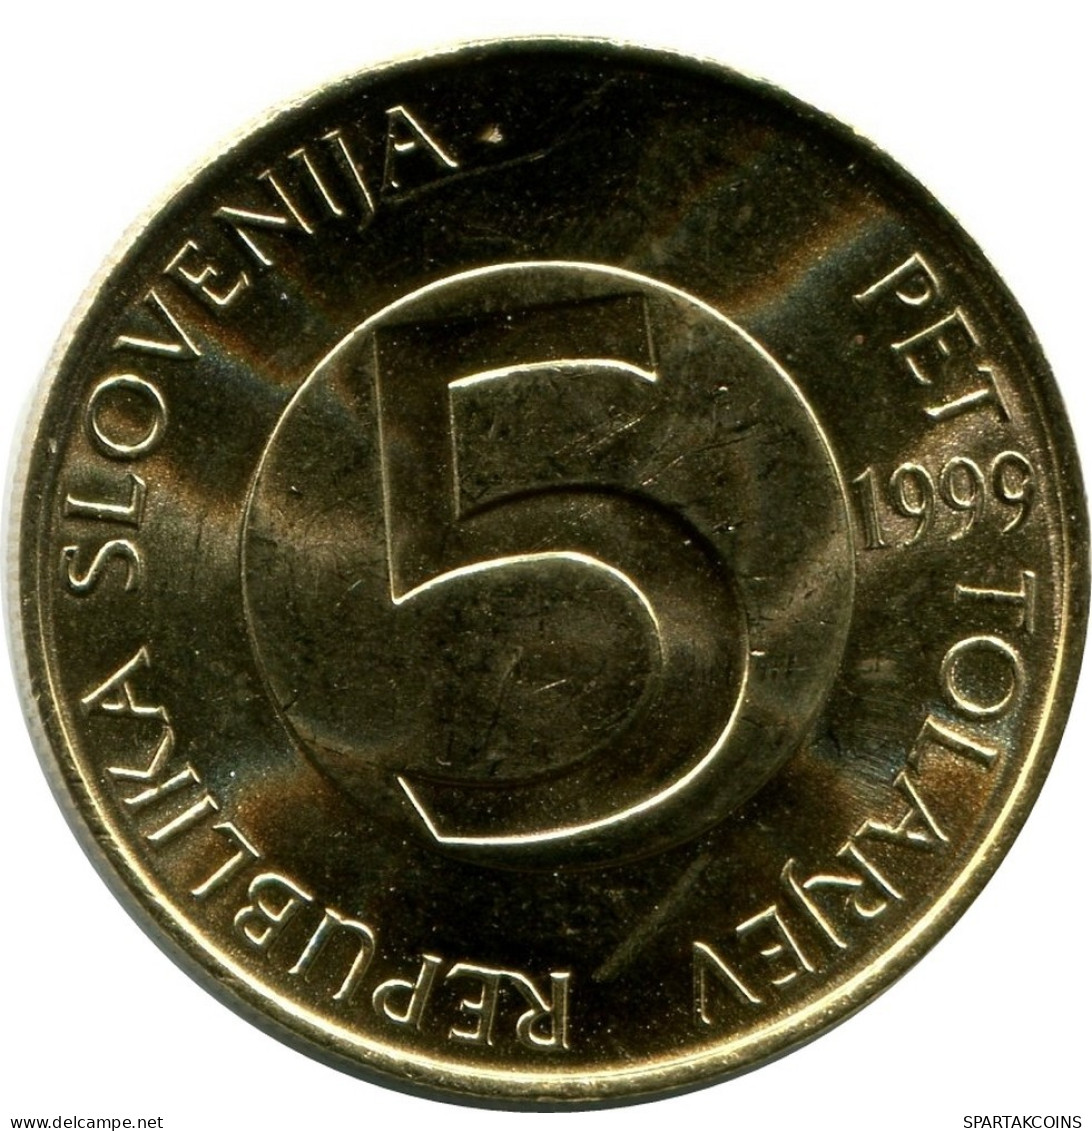 5 TOLAR 1999 ESLOVENIA SLOVENIA UNC Head Capricorn Moneda #M10216.E.A - Slowenien